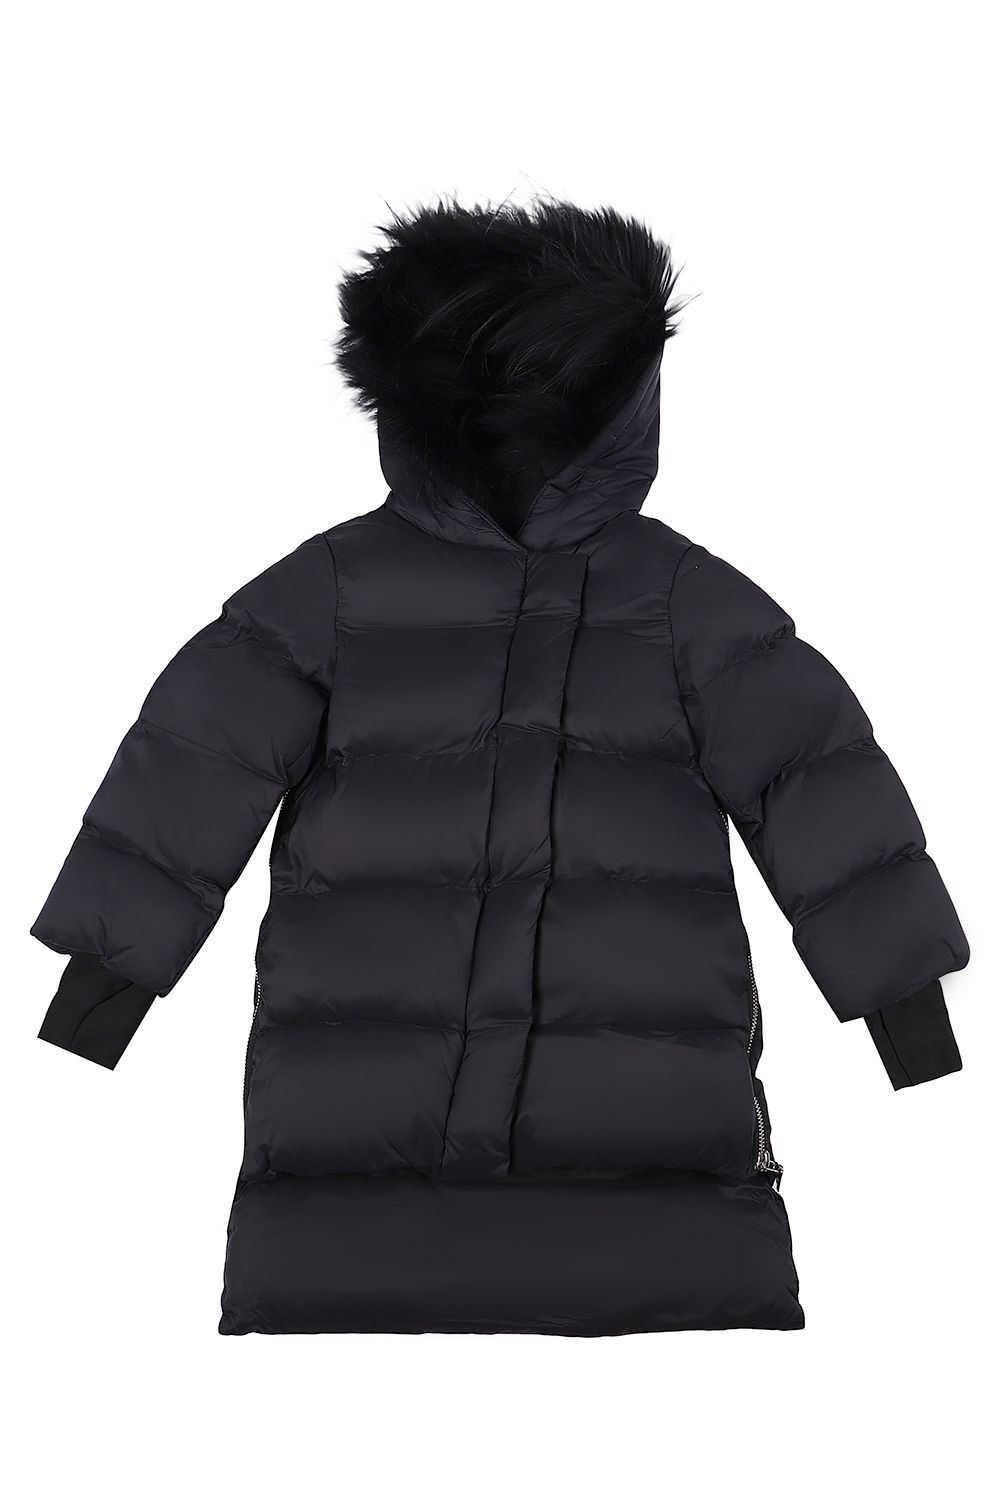 Куртка Gaialuna, размер 98, цвет черный GB2015 - фото 1